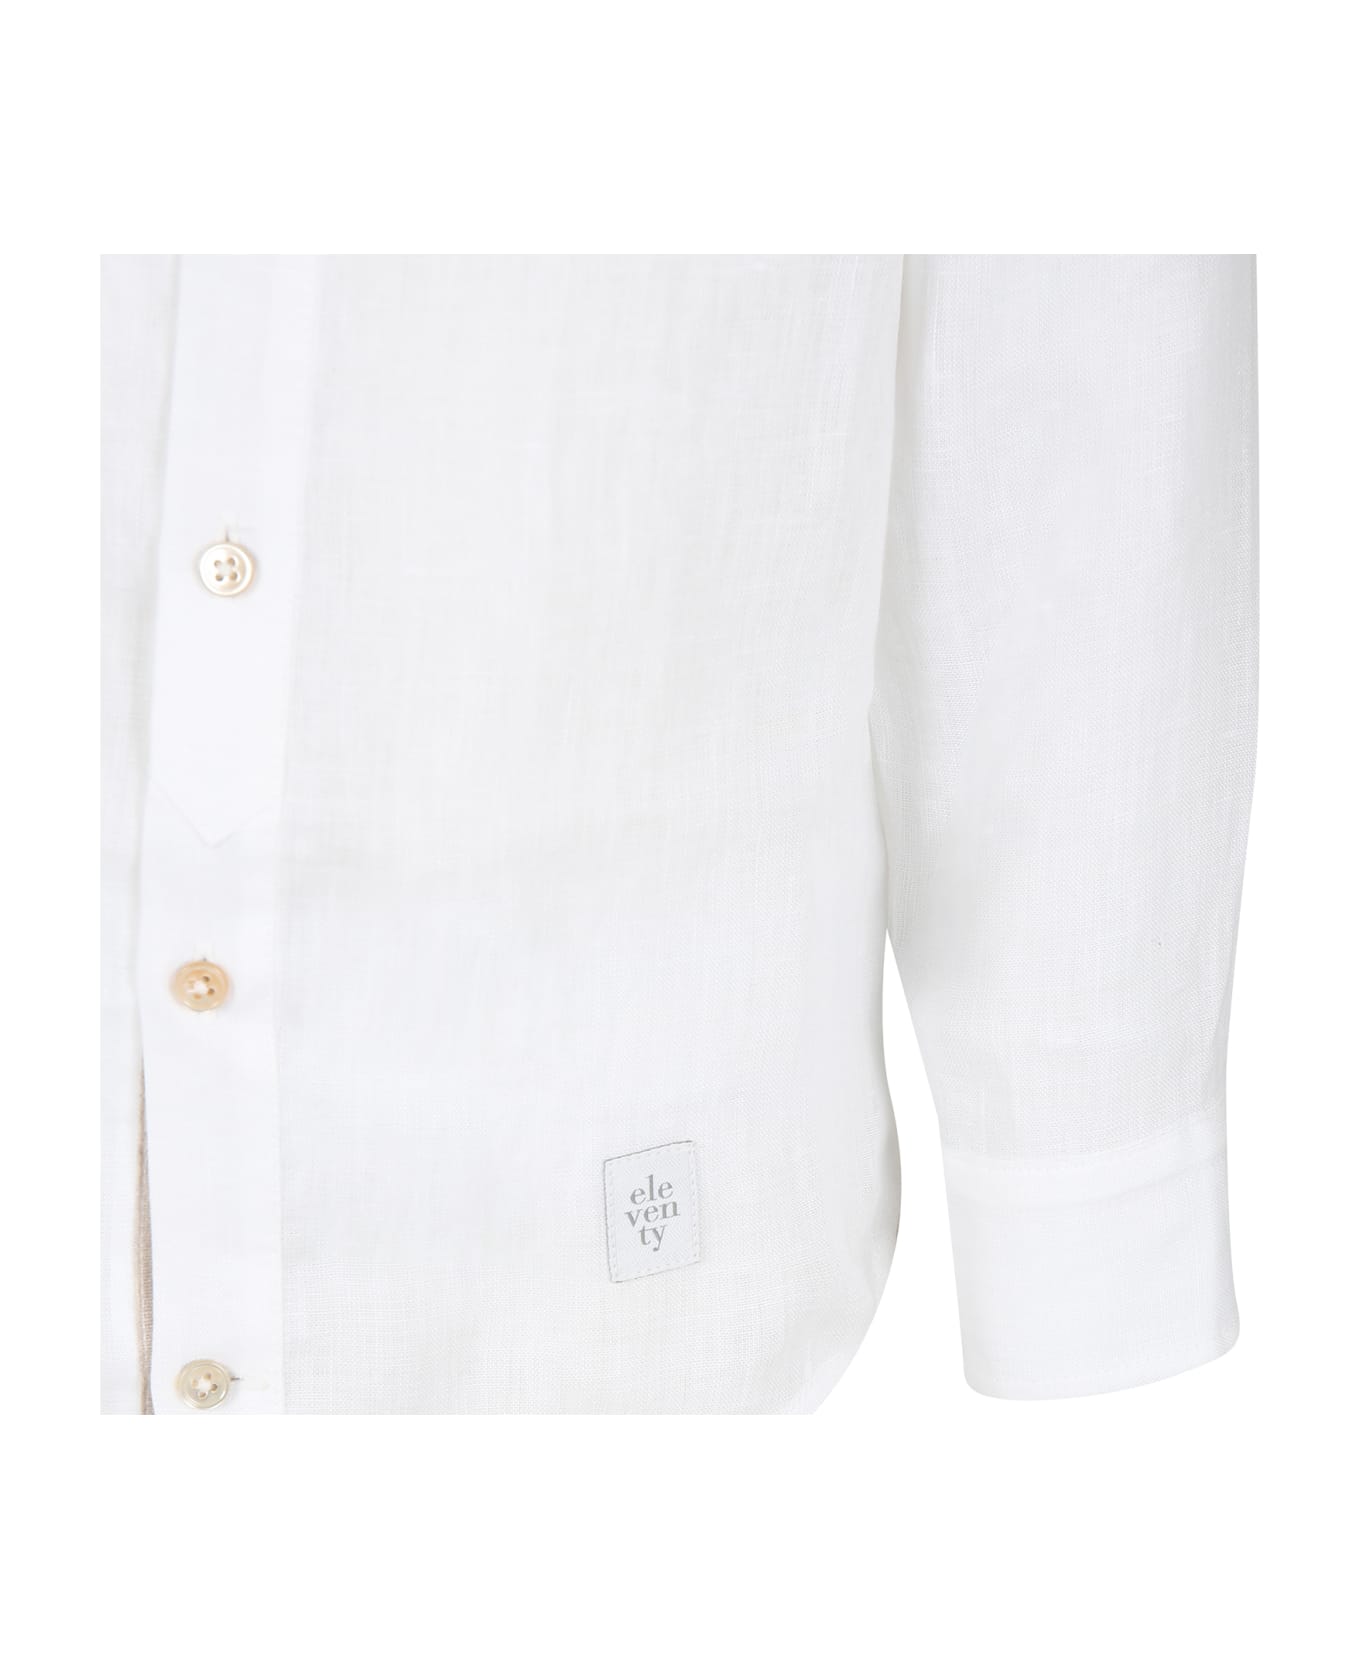 Eleventy White Shirt For Boy With Logo - Ivory